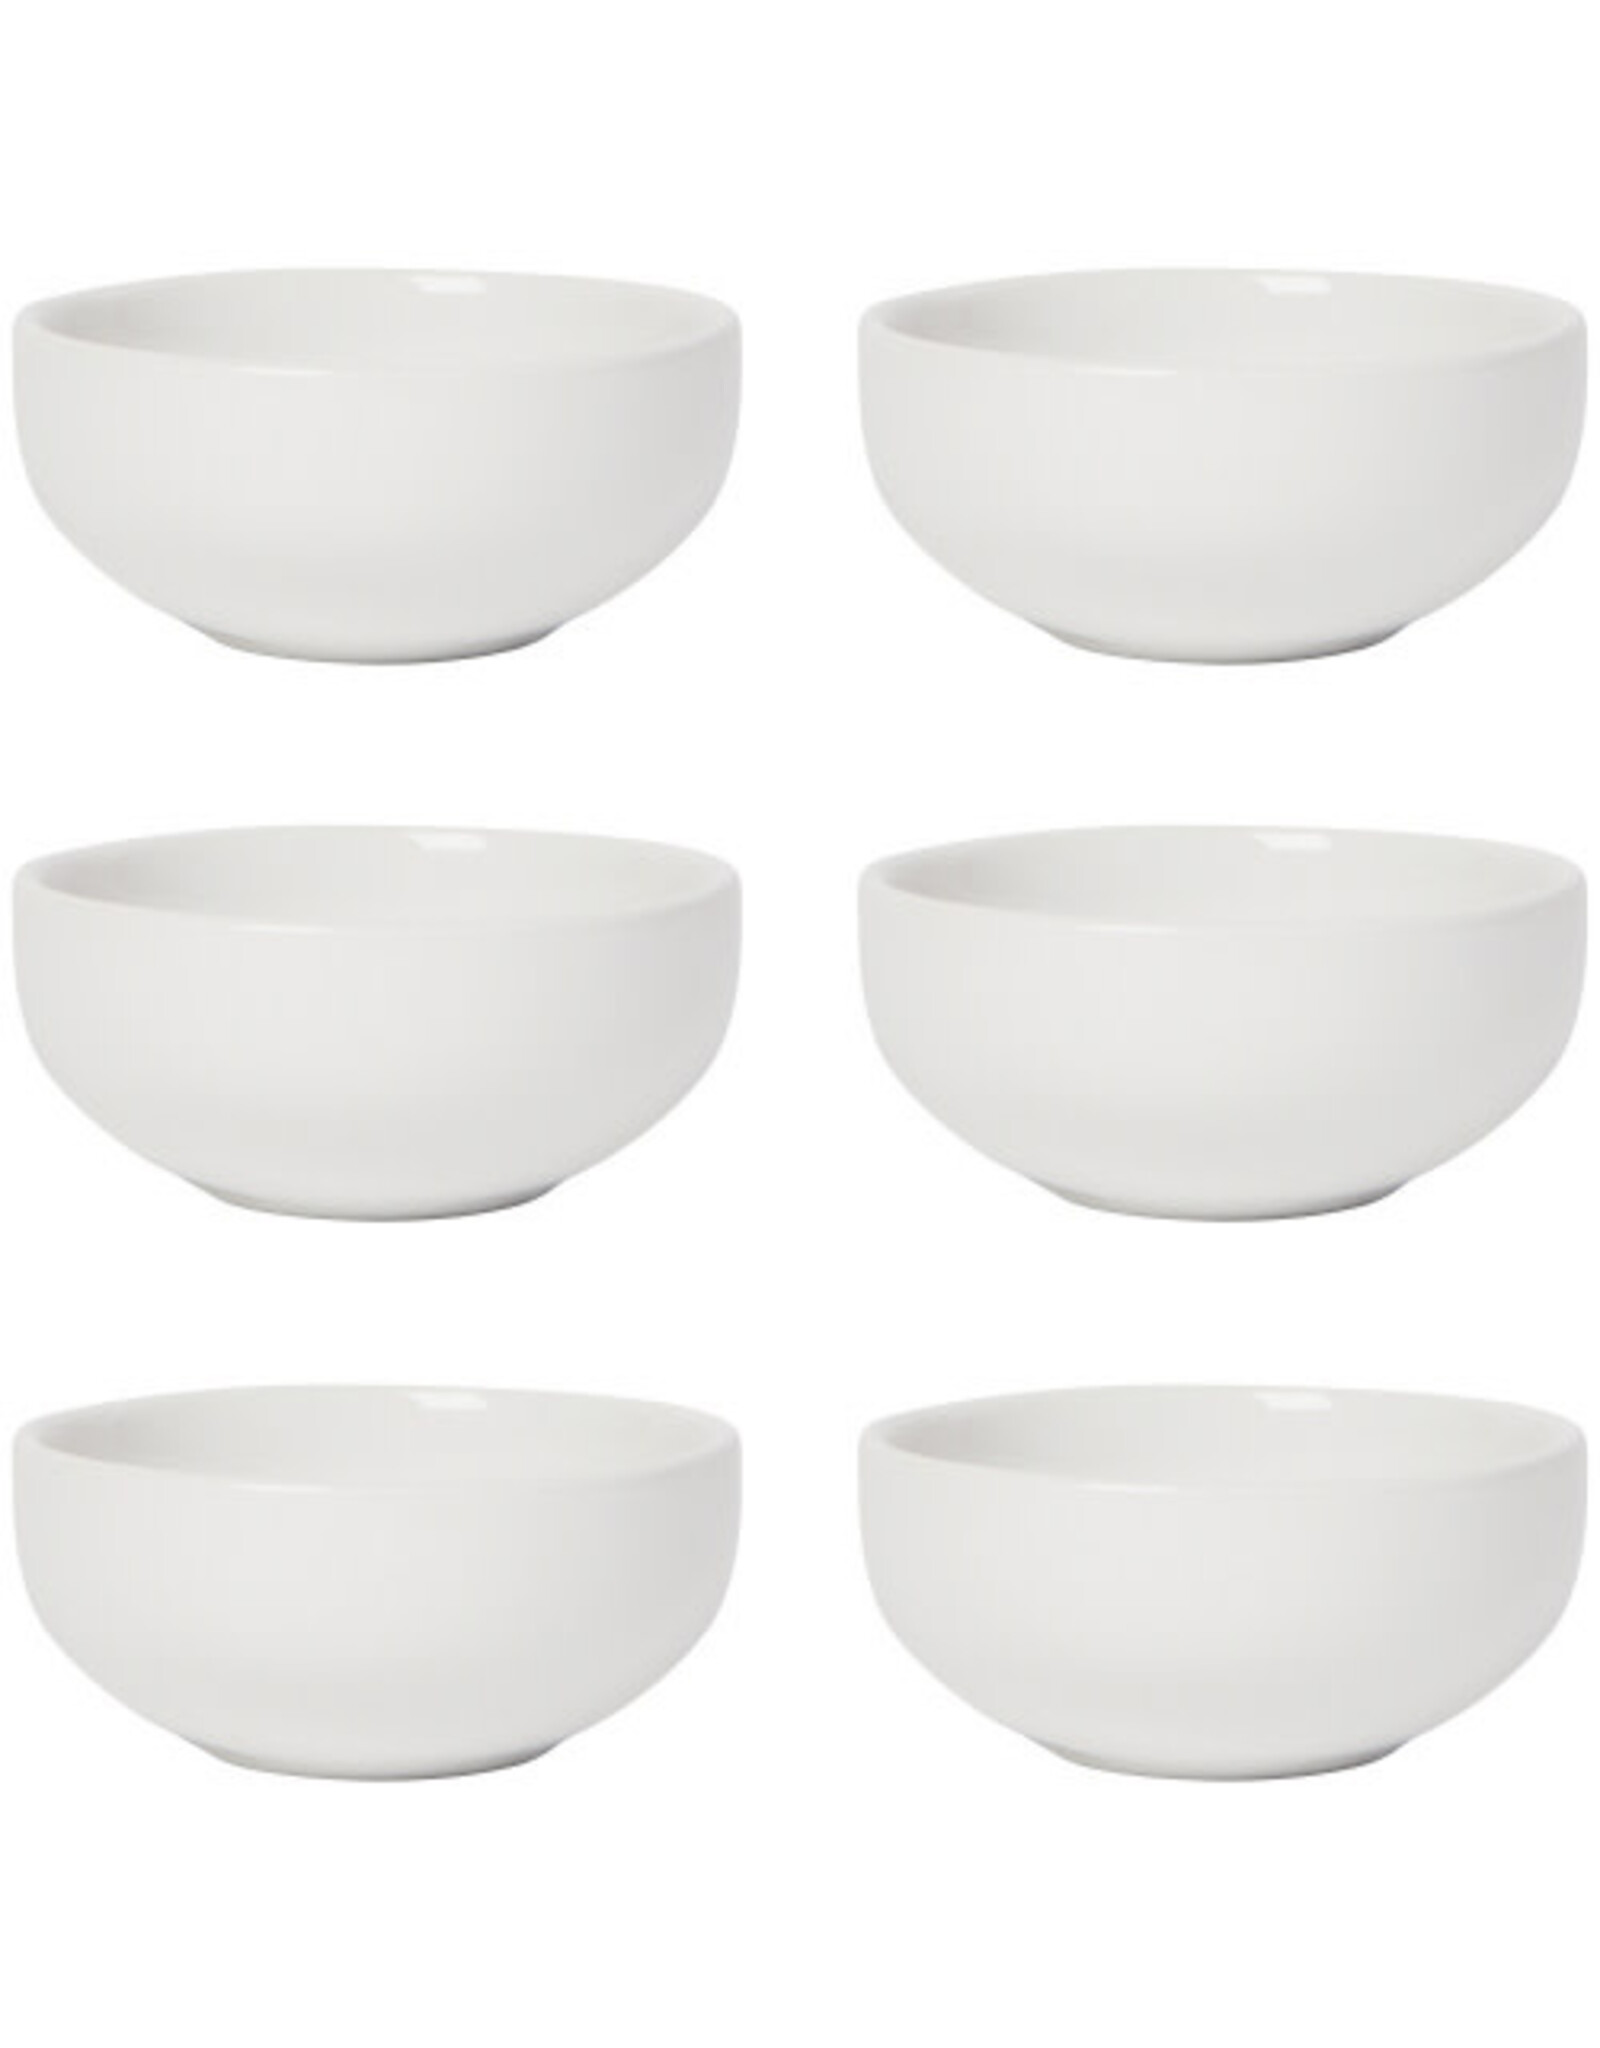 White Pinch Bowl - Set of 6